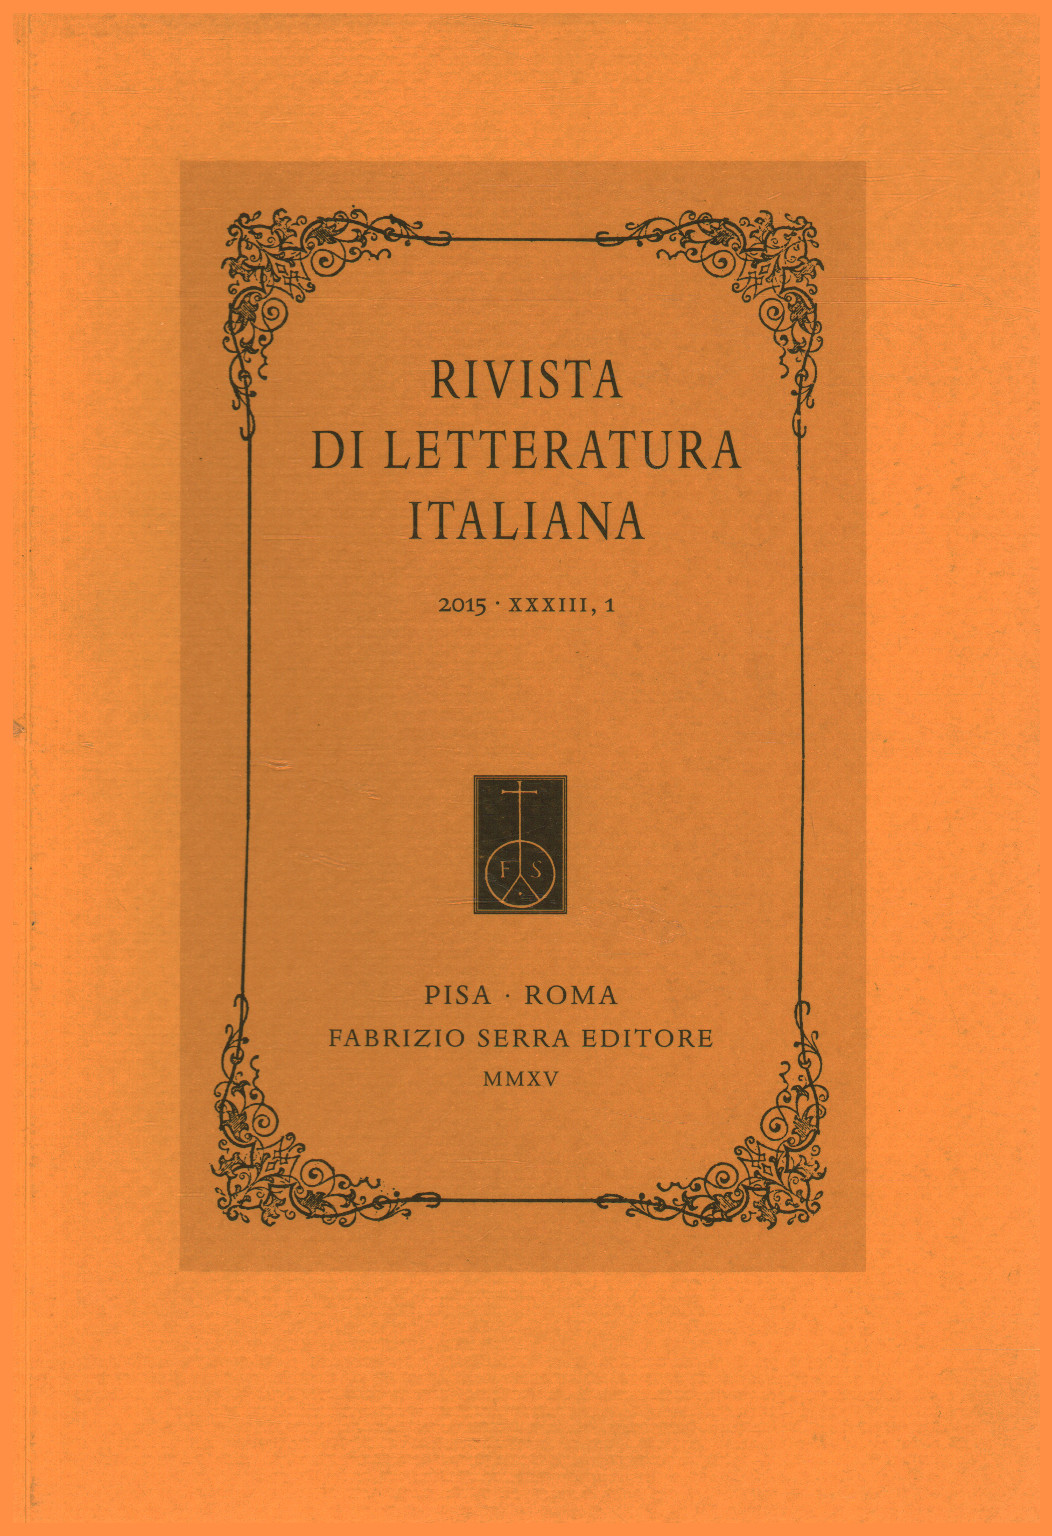 Zeitschrift für italienische literatur 2015,XXXIII,1, s.zu.